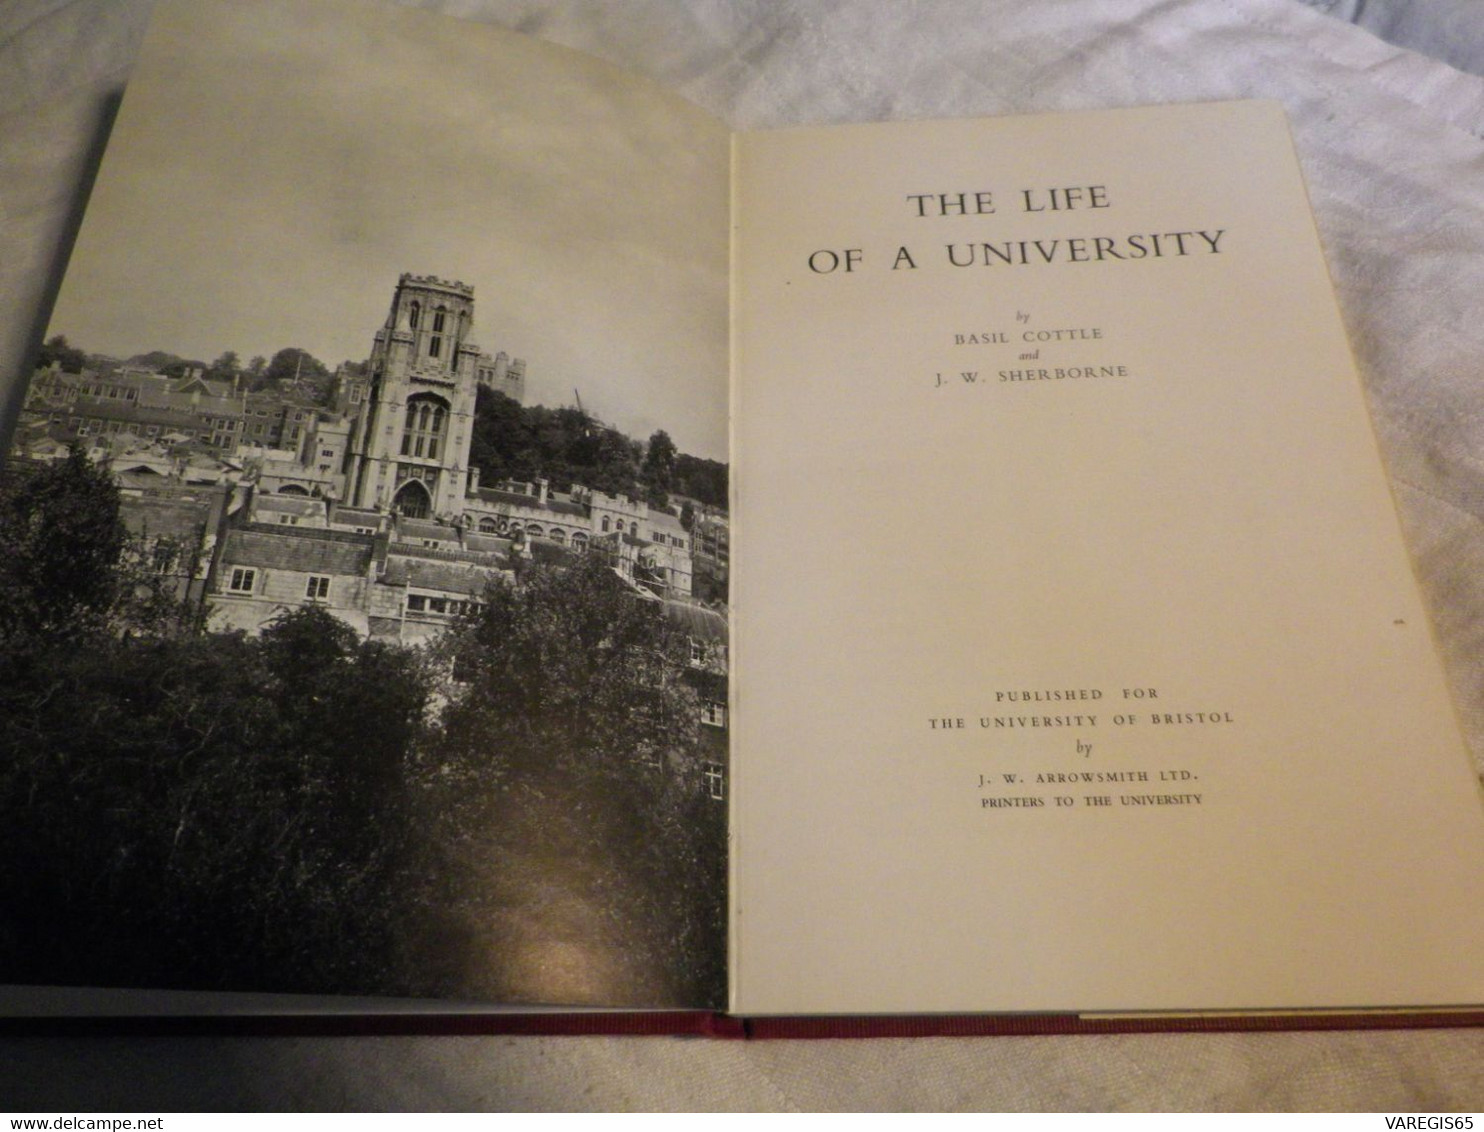 THE LIFE OF THE UNIVERSITY - UNIVERSITY OF BRISTOL - 1e EDITION 1951 - LIVRE RELIÉ AVEC JAQUETTE - Kultur